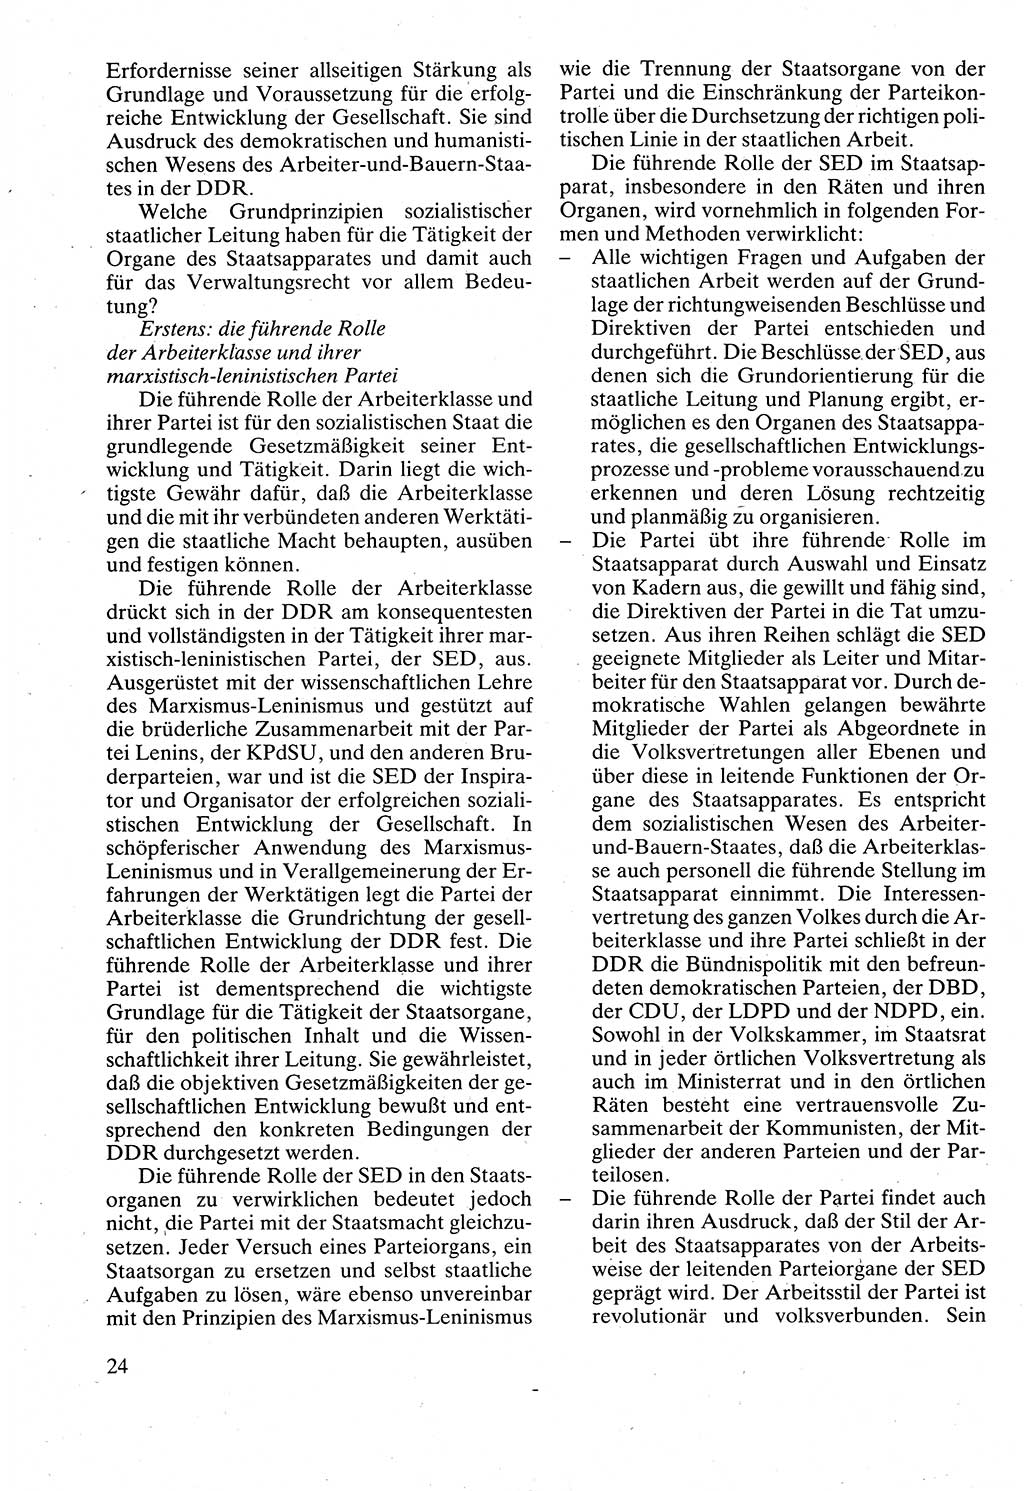 Verwaltungsrecht [Deutsche Demokratische Republik (DDR)], Lehrbuch 1988, Seite 24 (Verw.-R. DDR Lb. 1988, S. 24)